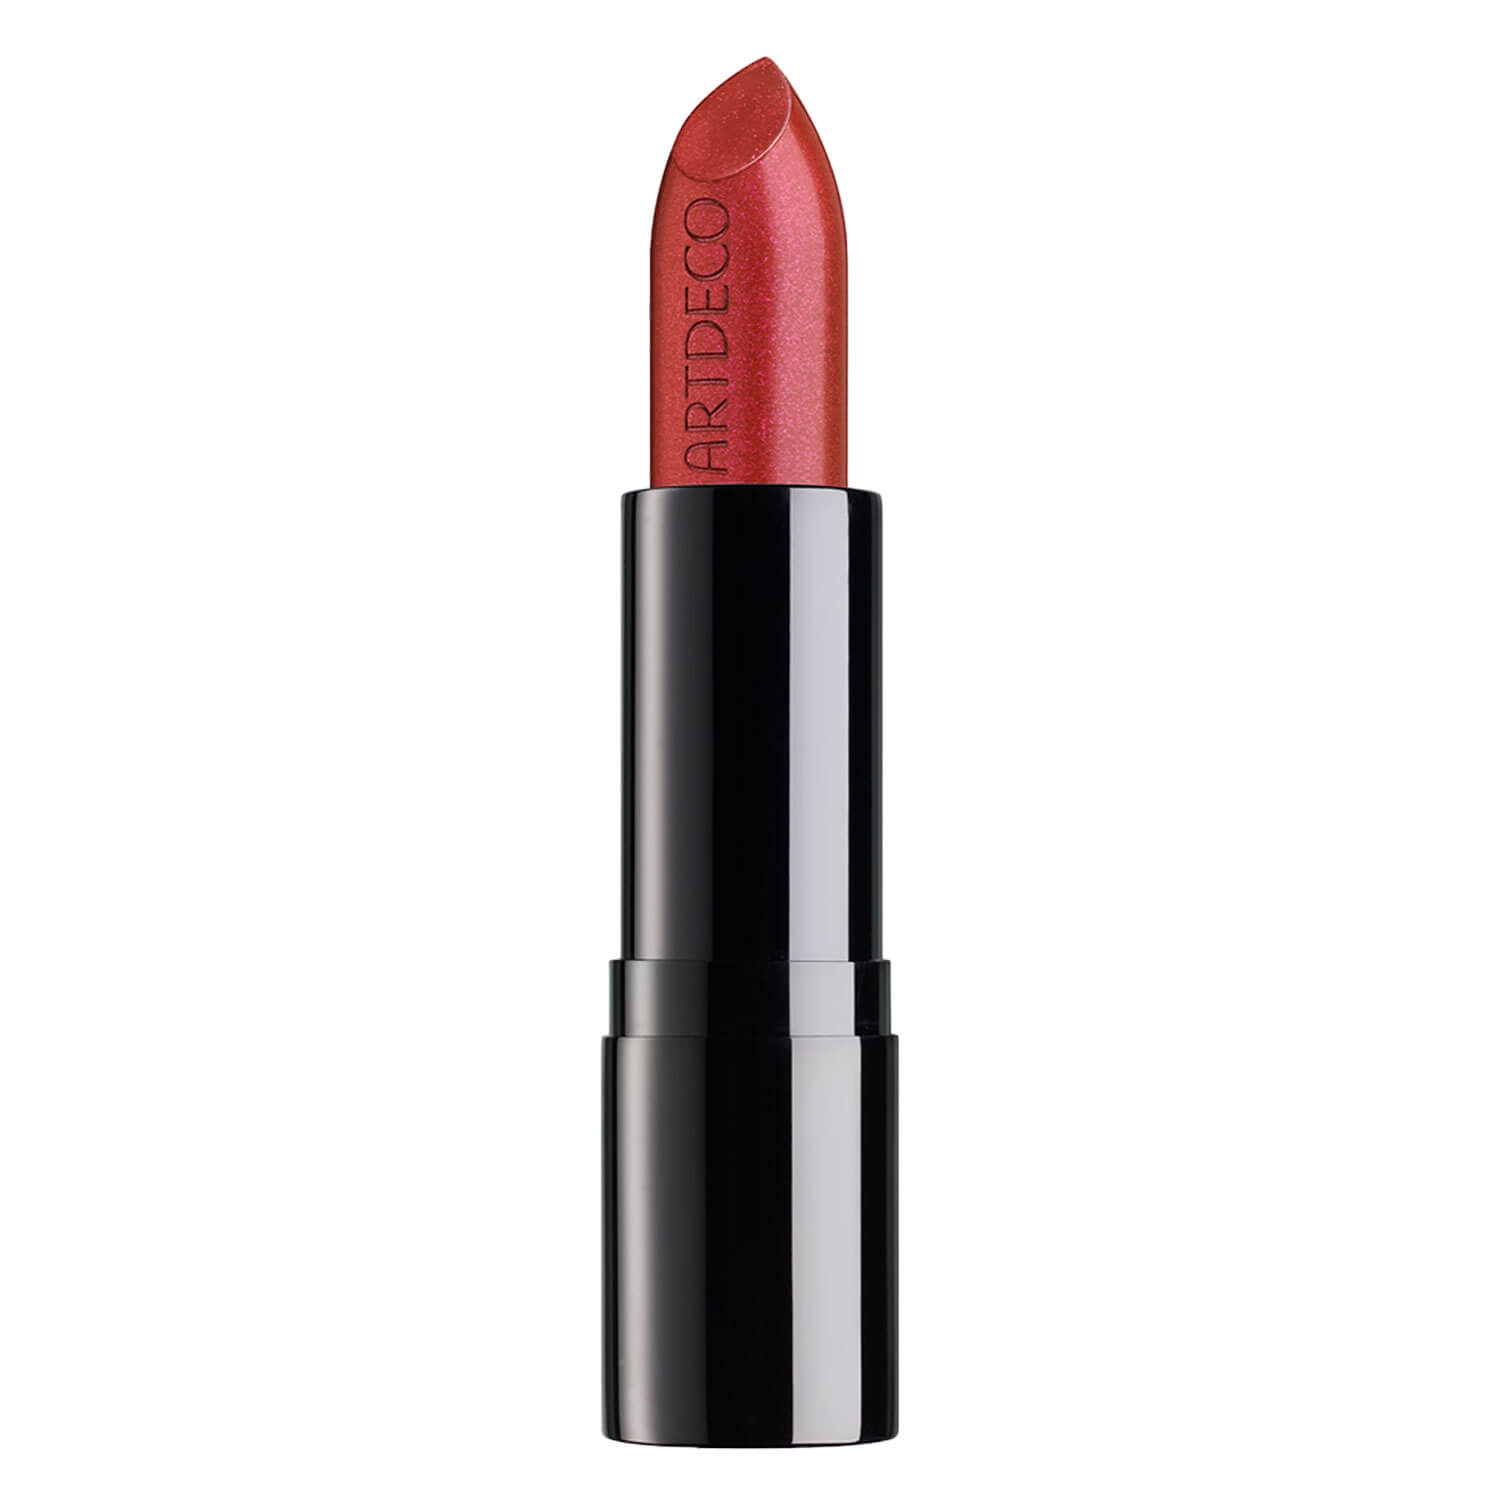 Produktbild von Metallic Lip Jewels - Glamorous Red 48